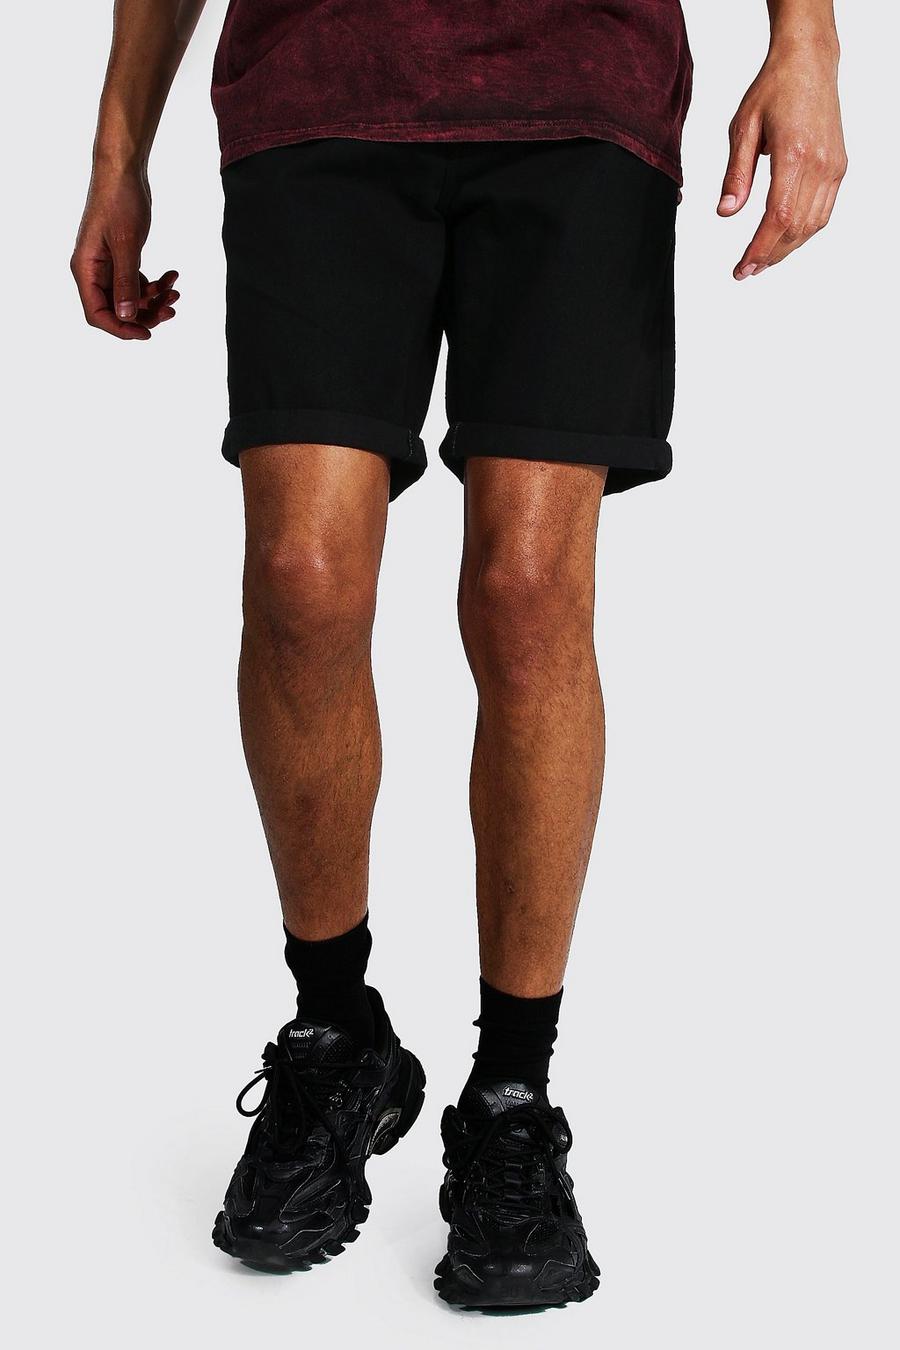 Pantalones cortos vaqueros rasgados de corte ajustado con vuelta Tall, Negro image number 1